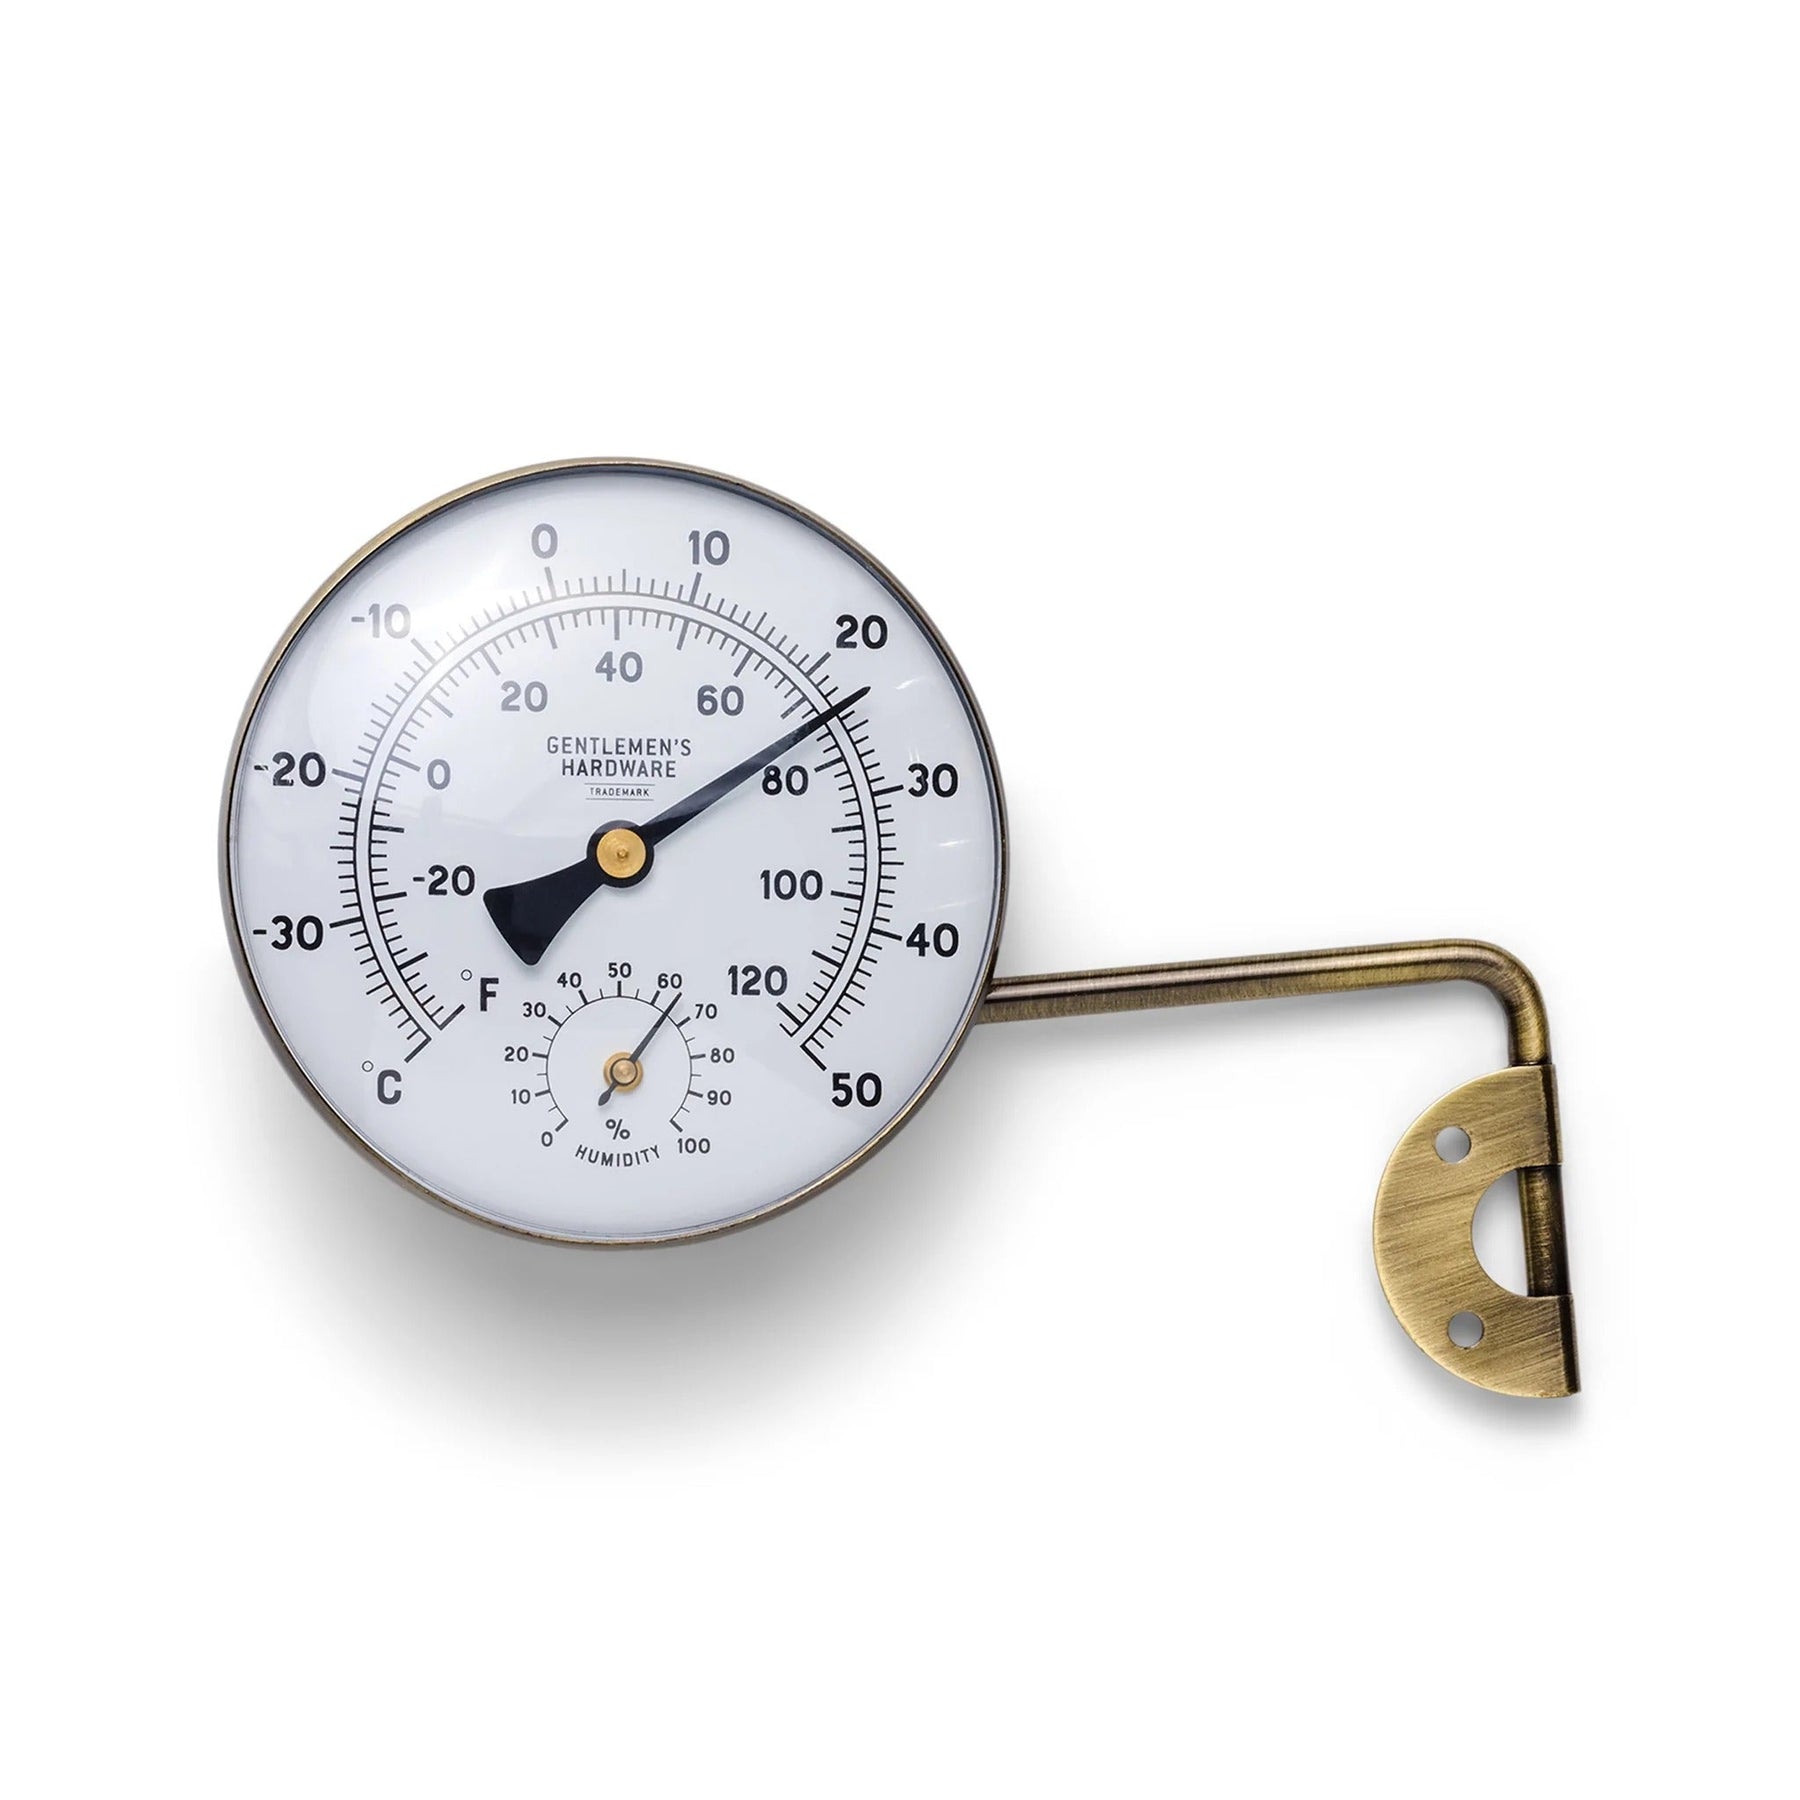 Gentlemen's Hardware Metal Garden Thermometer